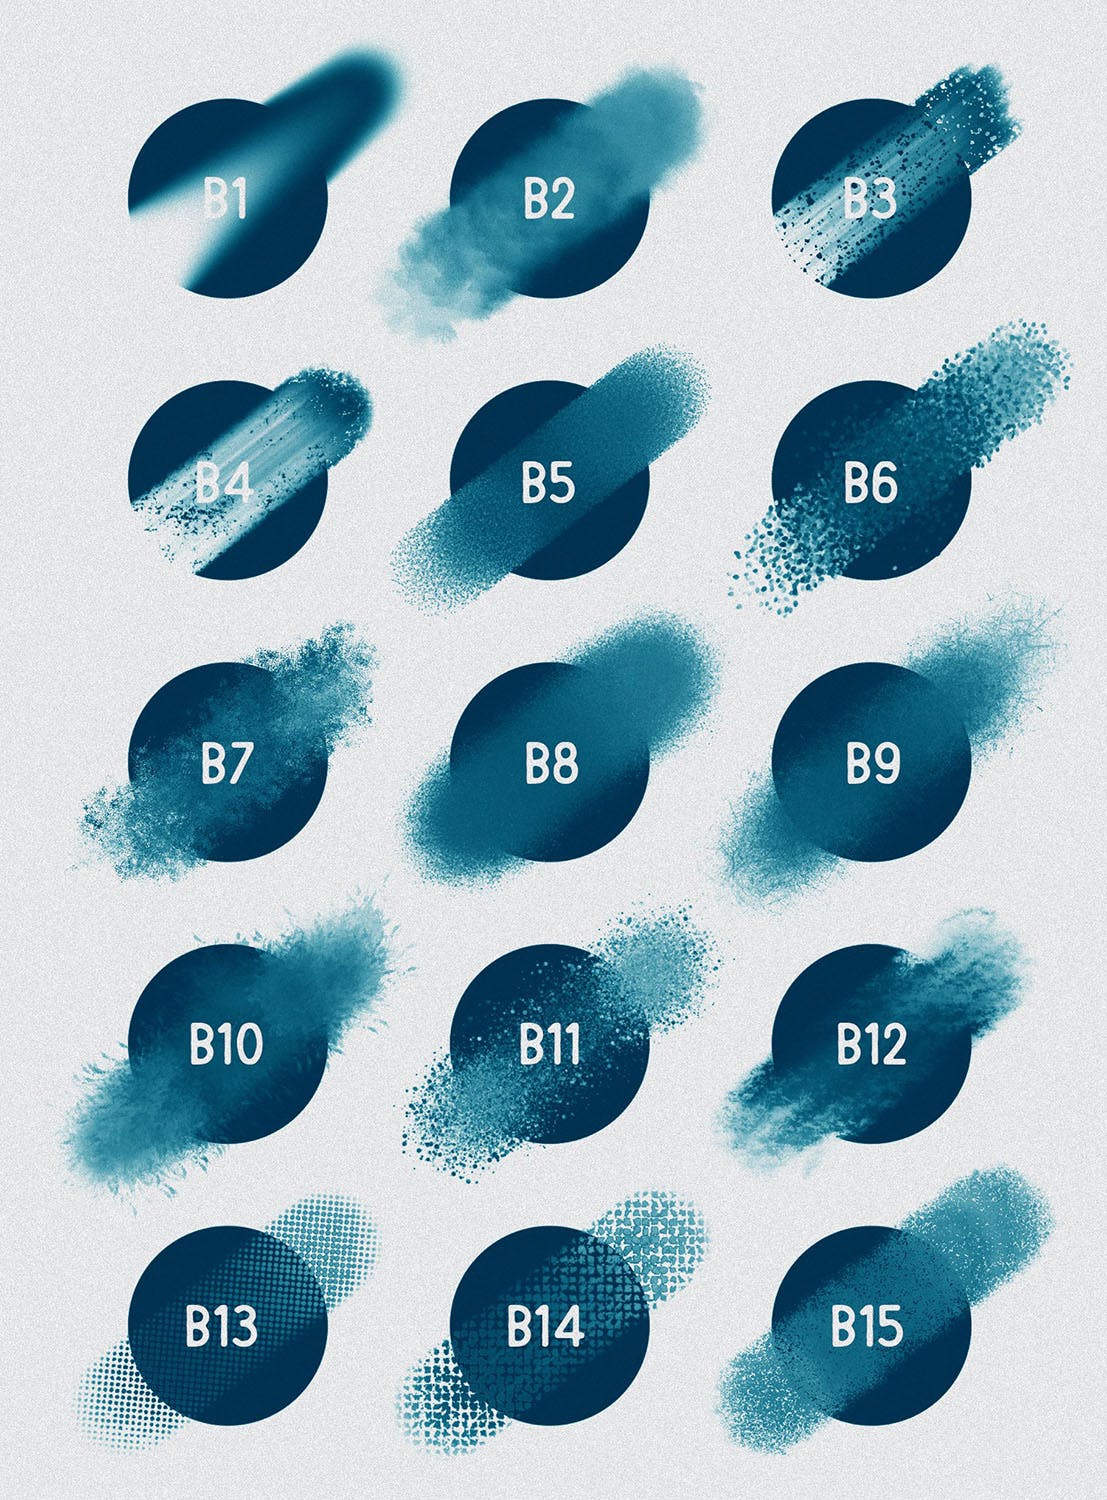 30种不同样式的Procreate专用混合笔刷素材库精选 Procreate: Blender Brushes插图(2)